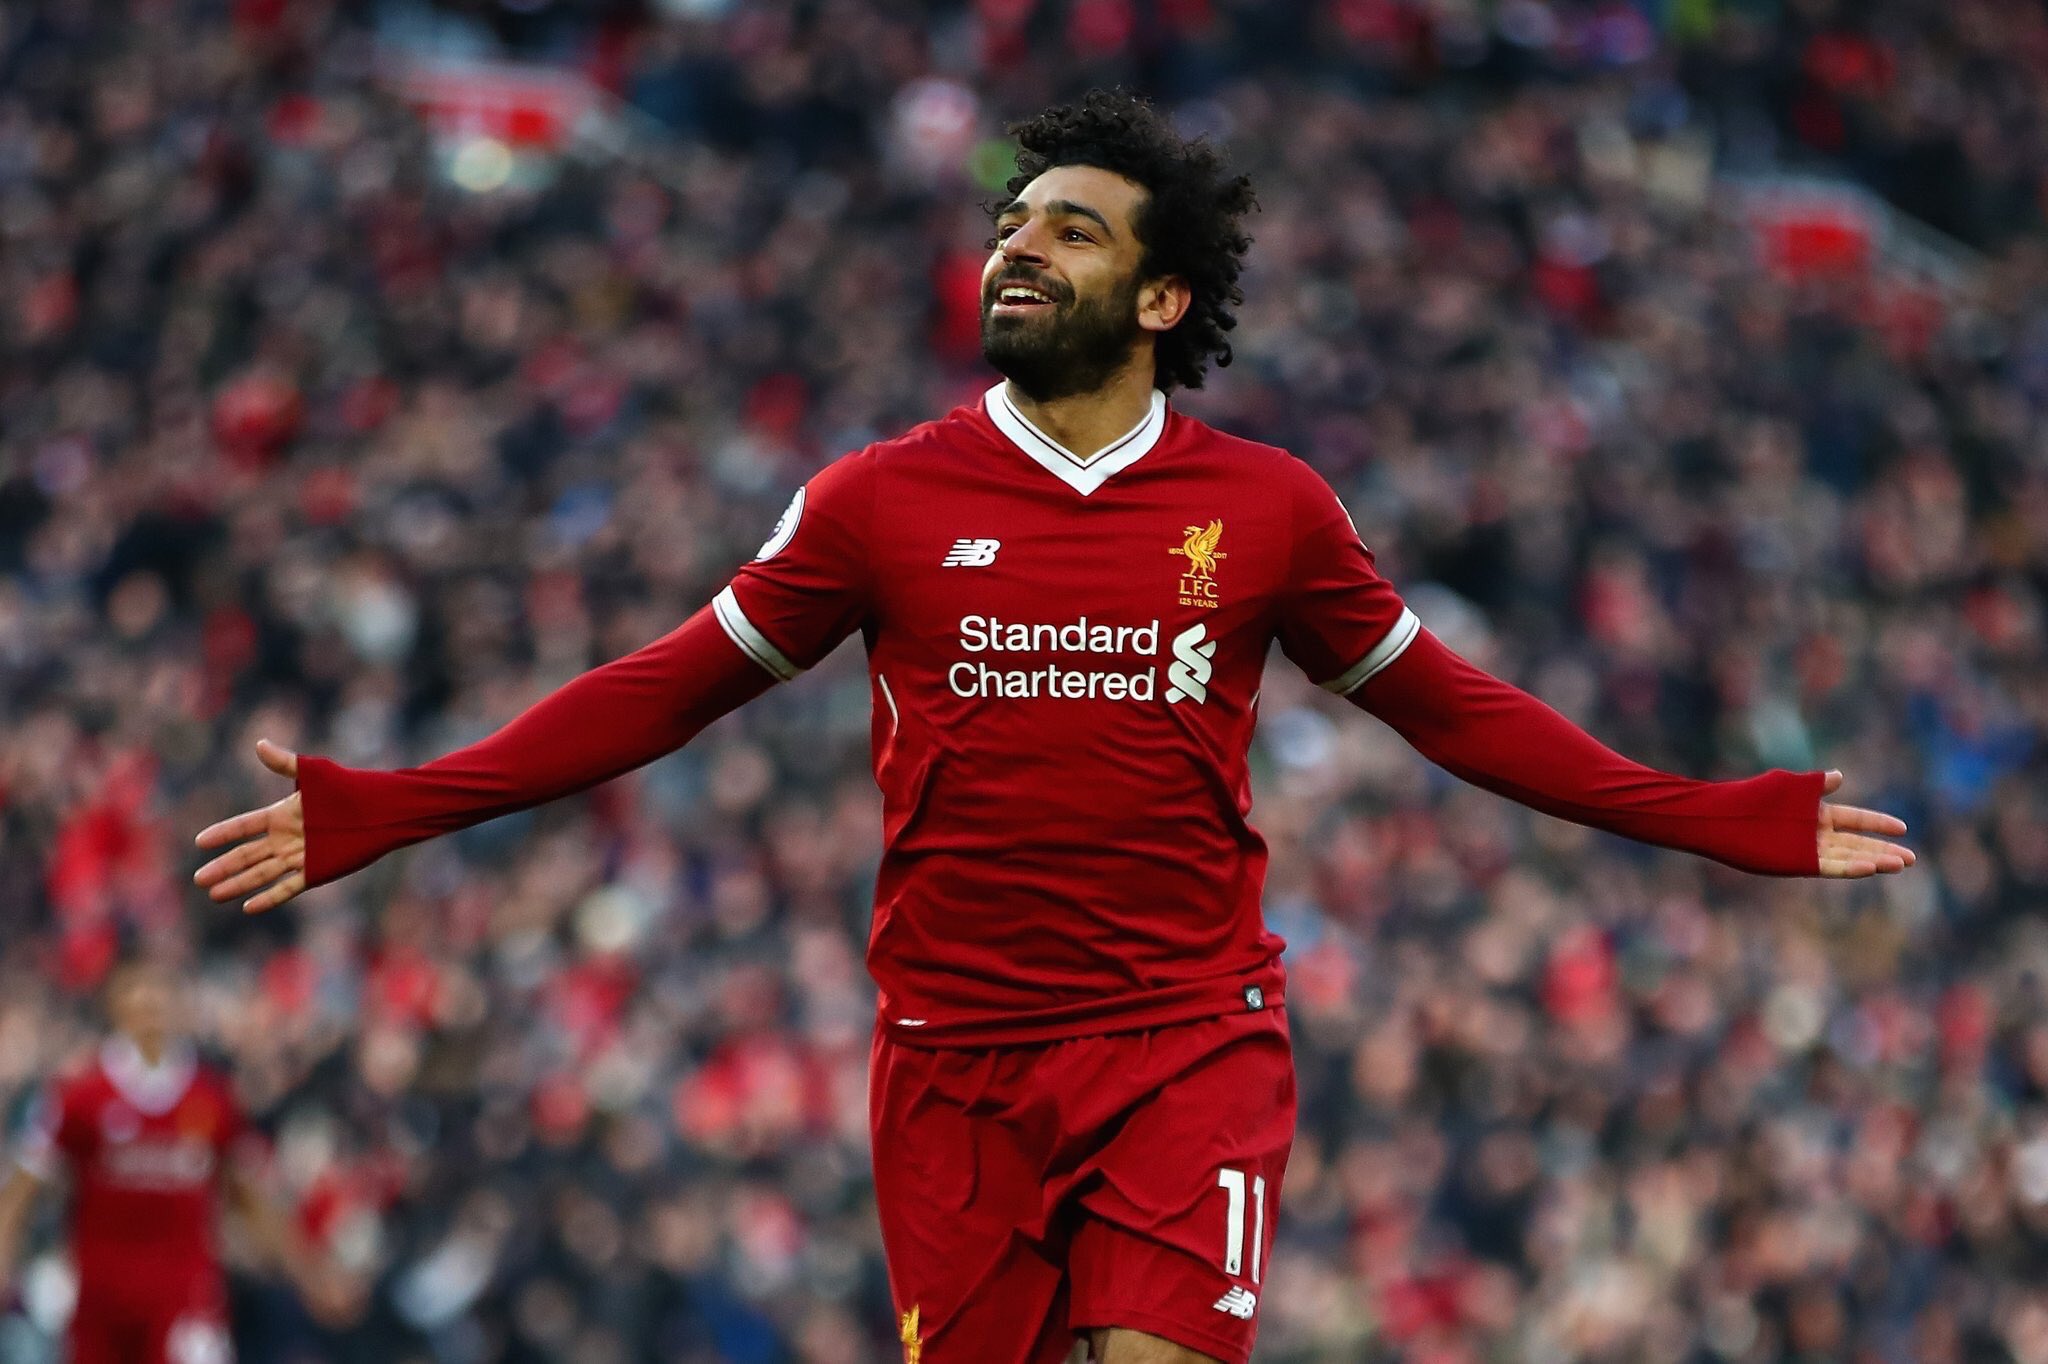 Joueurs les plus influents en Premier League : Mohamed Salah dans le top 3